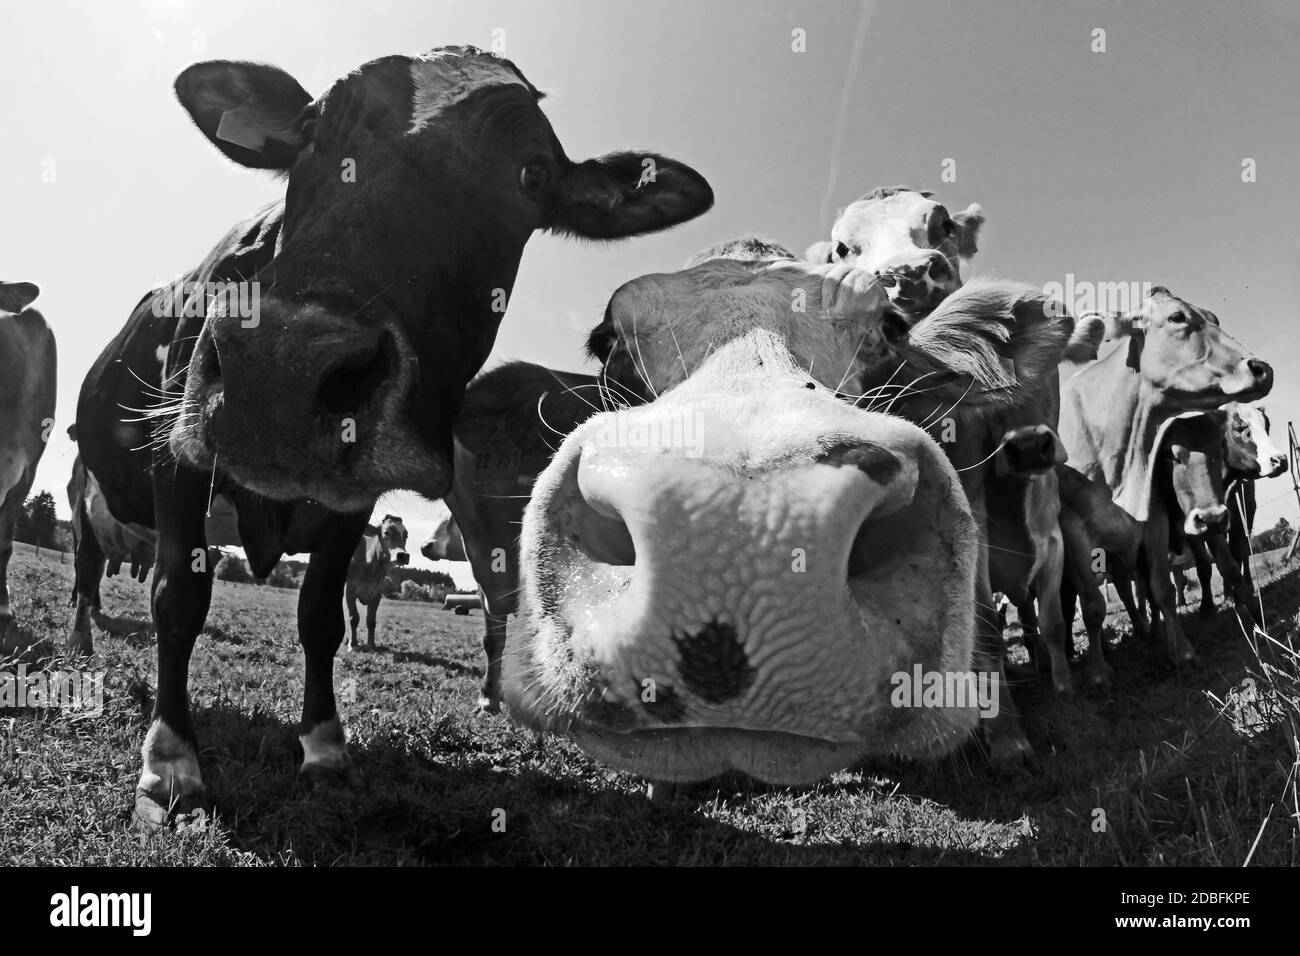 Lustige Weitwinkelaufnahme von neugierigen braunen und gefleckten Rindern auf einer Weide in Bayern in Schwarz-Weiß Stockfoto